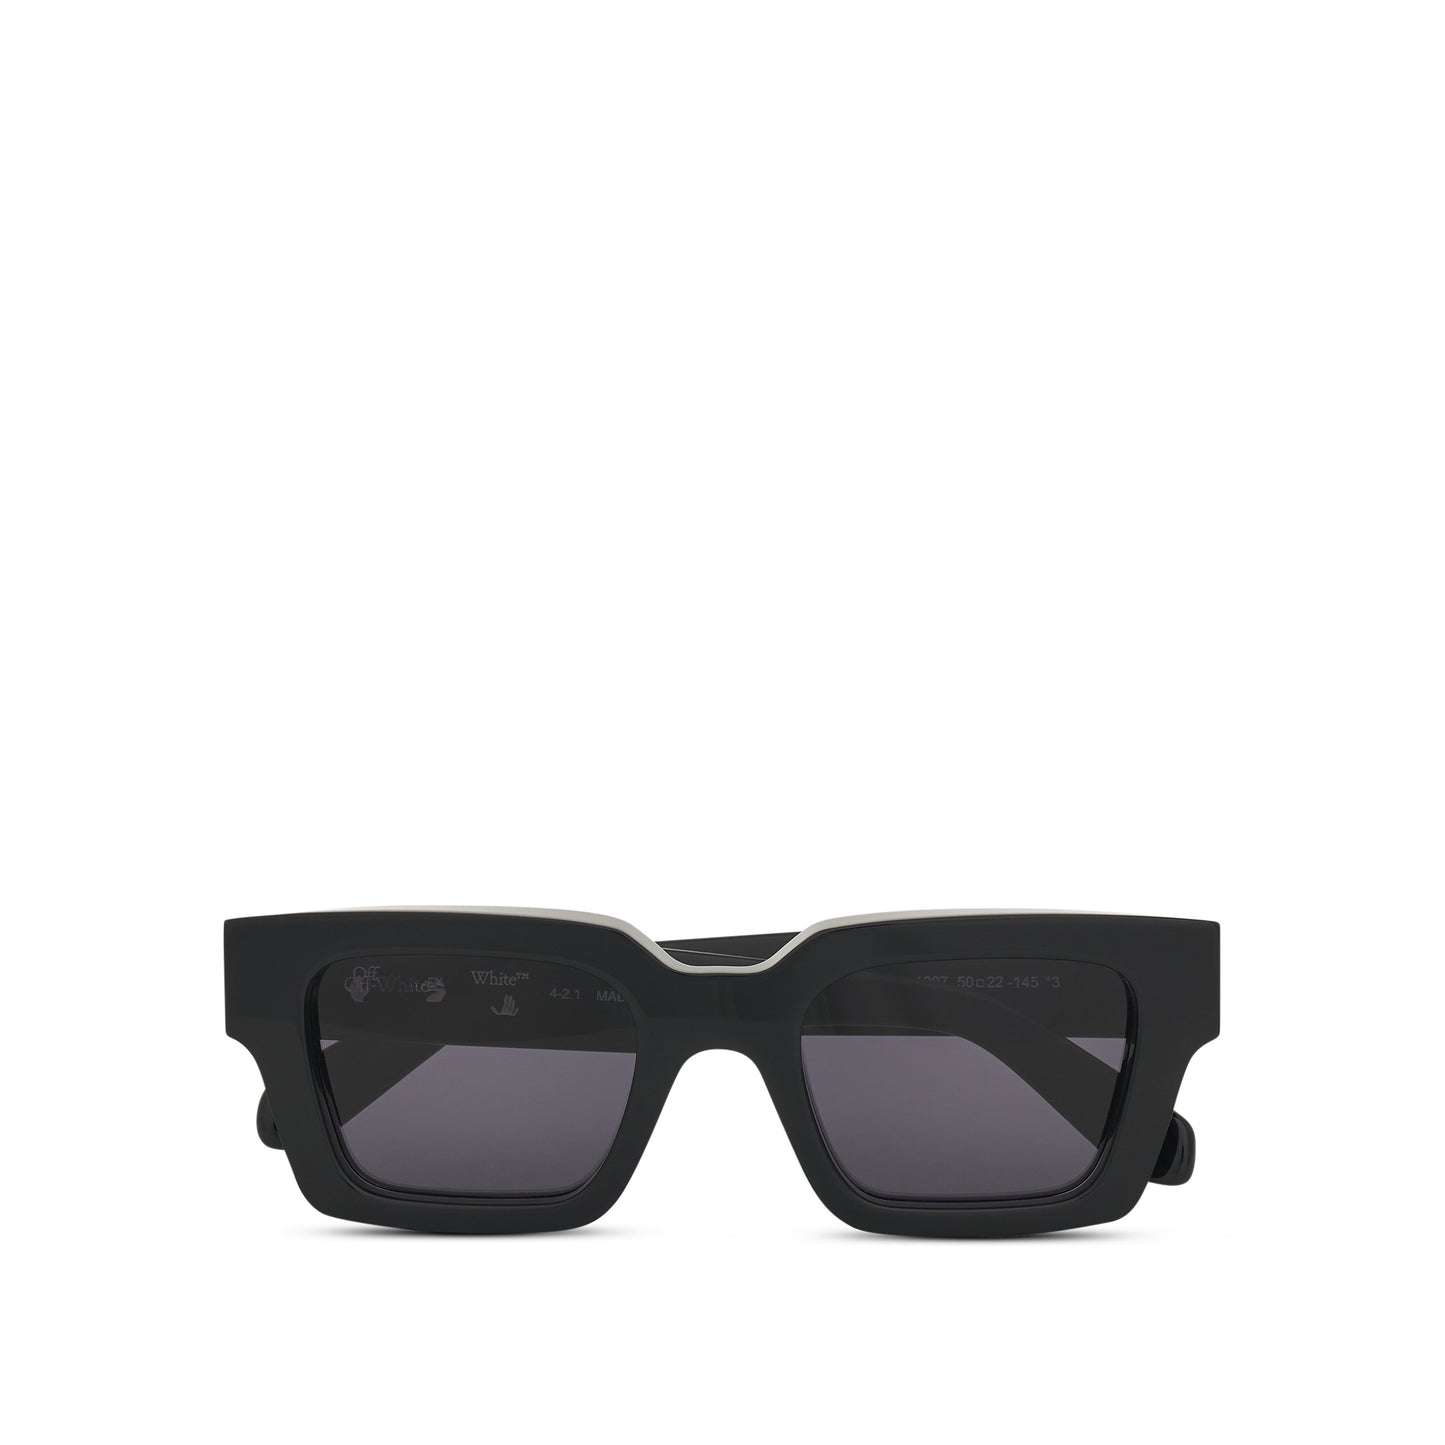 Virgil Sunglasses in Black/Dark Grey